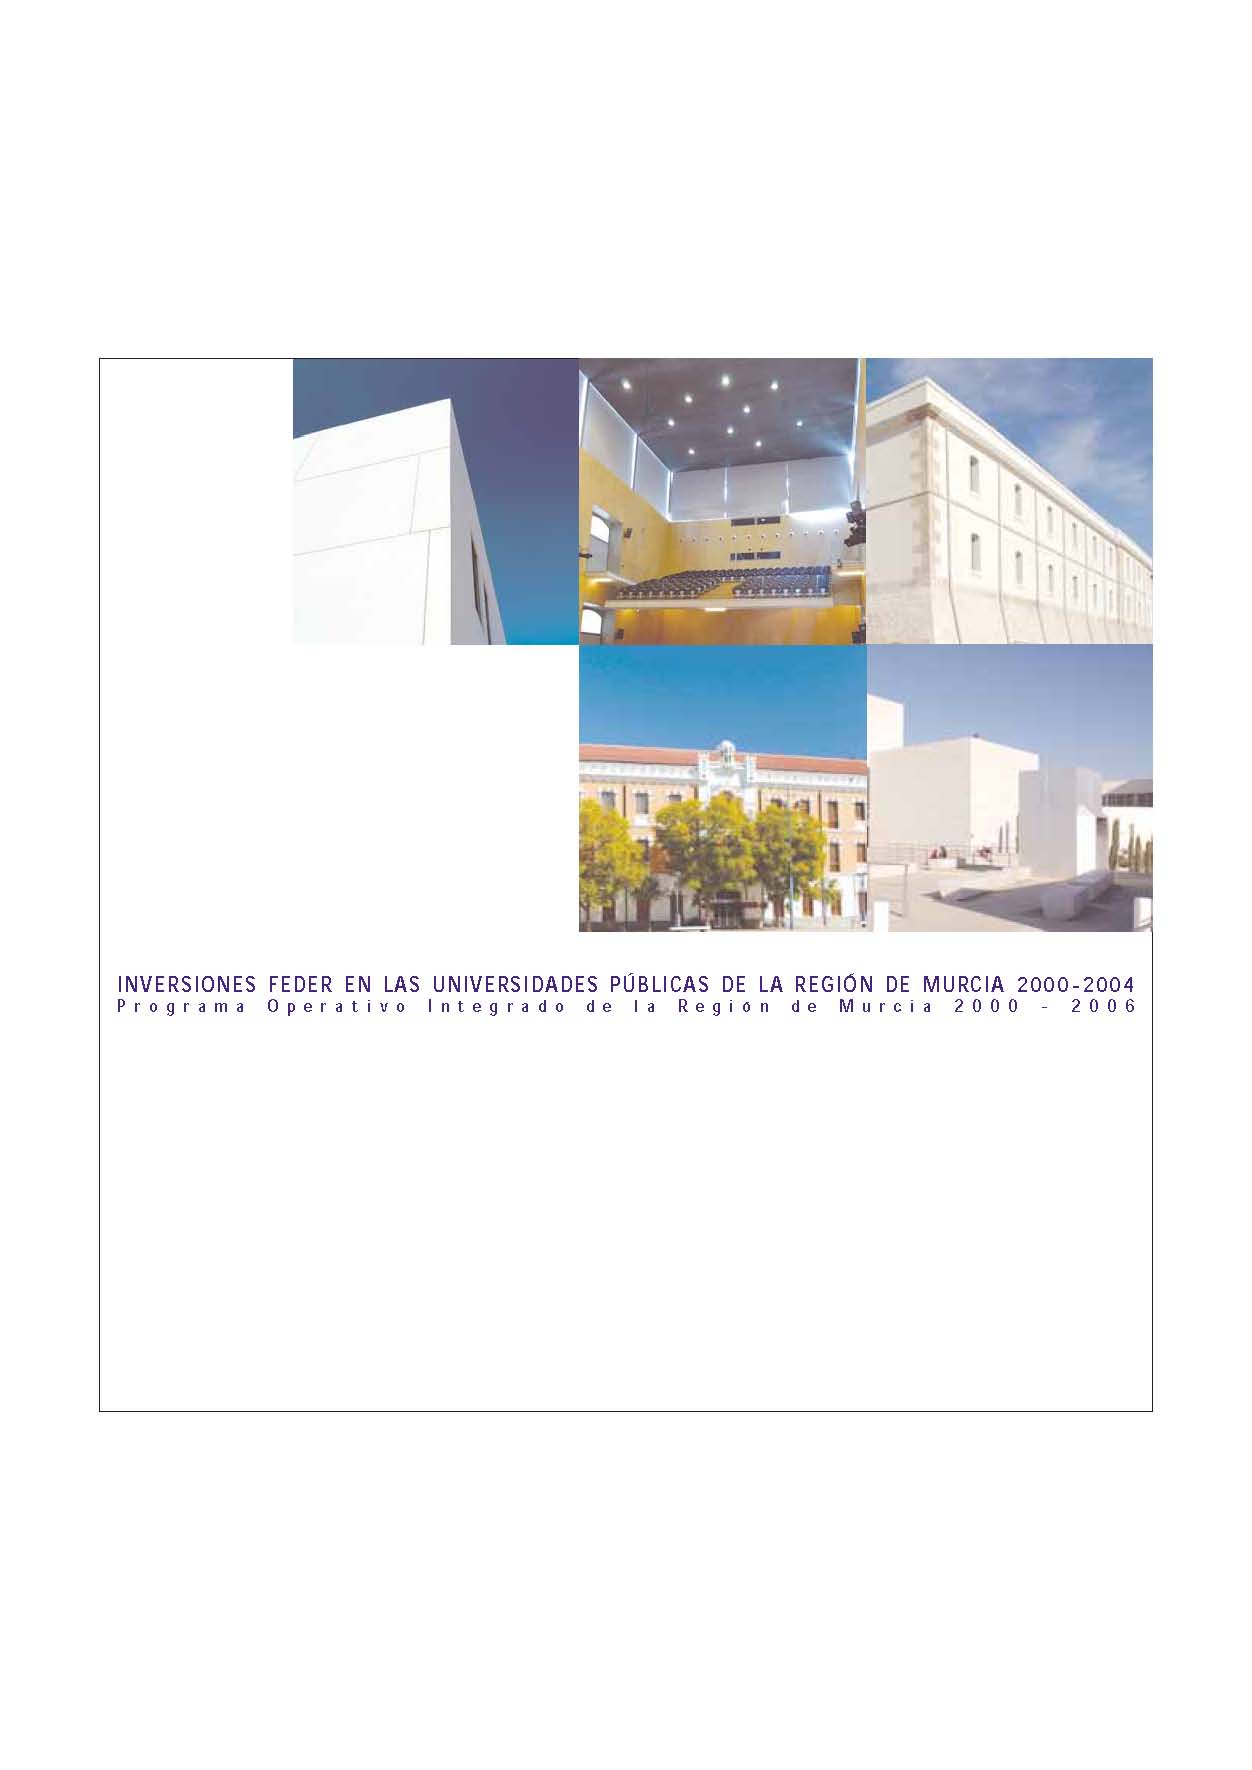 Portada de "Inversiones FEDER en las universidades públicas de la Región de Murcia 2000-2004. Programa operativo integrado de la Región de Murcia 2000-2004"